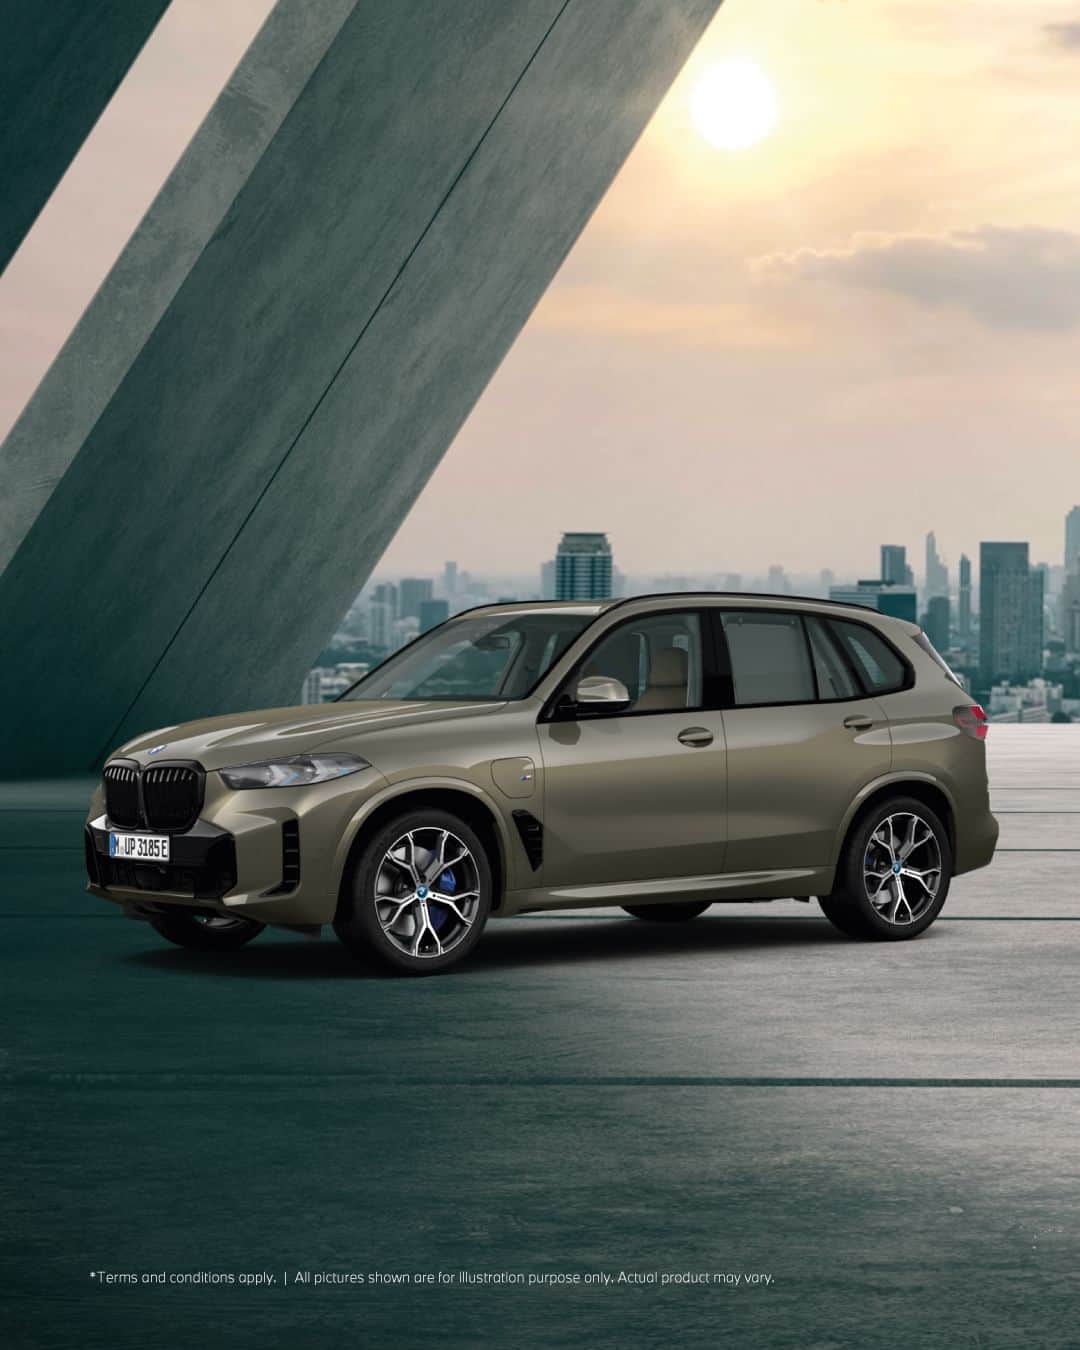 BMW Thailandのインスタグラム：「THE NEW X5 ยนตรกรรม SAV ที่จะมอบความสะดวกสบายสูงสุดและลุยไปกับคุณได้ในทุกเส้นทาง นำเสนอความสวยงามของไฟหน้าและไฟท้ายแบบ LED ใหม่ พร้อมด้วยห้องโดยสารที่สปอร์ตและหรูหรายิ่งขึ้นกว่าเดิม มาพร้อมกับ 2 รุ่นย่อยที่ให้คุณเลือกตอบโจทย์ไลฟ์สไตล์ได้อย่างลงตัว  🔹THE NEW X5 xDrive30d M Sport ขุมพลังดีเซล 6 สูบแถวเรียงมาพร้อมกับแรงบิดมหาศาลถึง 670 นิวตันเมตร พร้อมให้คุณใช้งานทุกสถานการณ์ ผสมผสานกับช่วงล่างแบบ Adaptive M Suspension ที่สร้างความมั่นใจในทุกสภาวะ เติมเต็มสุนทรียภาพแห่งการเดินทางด้วยระบบเครื่องเสียงรอบทิศทาง Harman Kardon และเสริมความดุดันด้วยล้ออัลลอย M น้ำหนักเบา ขนาด 20 นิ้ว  🔹THE NEW X5 xDrive50e M Sport อีกระดับแห่งการขับเคลื่อนด้วยเครื่องยนต์เบนซินปลั๊กอินไฮบริด พละกำลัง 489 แรงม้า ขับเคลื่อนด้วยมอเตอร์ไฟฟ้าได้ไกลสูงสุด 113 กิโลเมตร จับคู่กับช่วงล่างถุงลม Adaptive 2-axle มอบความสะดวกสบายในทุกเส้นทาง โดดเด่นด้วยกระจังหน้า BMW Kidney ‘Iconic Glow’ และไฟหน้า M Lights Shadow Line ภายในเสริมความหรูหราด้วยการตกแต่งผลึกแก้ว ‘CraftedClarity’ พร้อมระบบเสียงรอบทิศทาง Bowers & Wilkins Diamond  คลิกจอง: https://shop.bmw.co.th/  ข้อมูลเพิ่มเติม คลิก: https://www.bmw.co.th/th/all-models/x-series/X5/2023/bmw-x5-overview.html   #BMW #BMWTH #JOYisBMW #สุนทรียภาพแห่งการขับขี่ #THEX5」